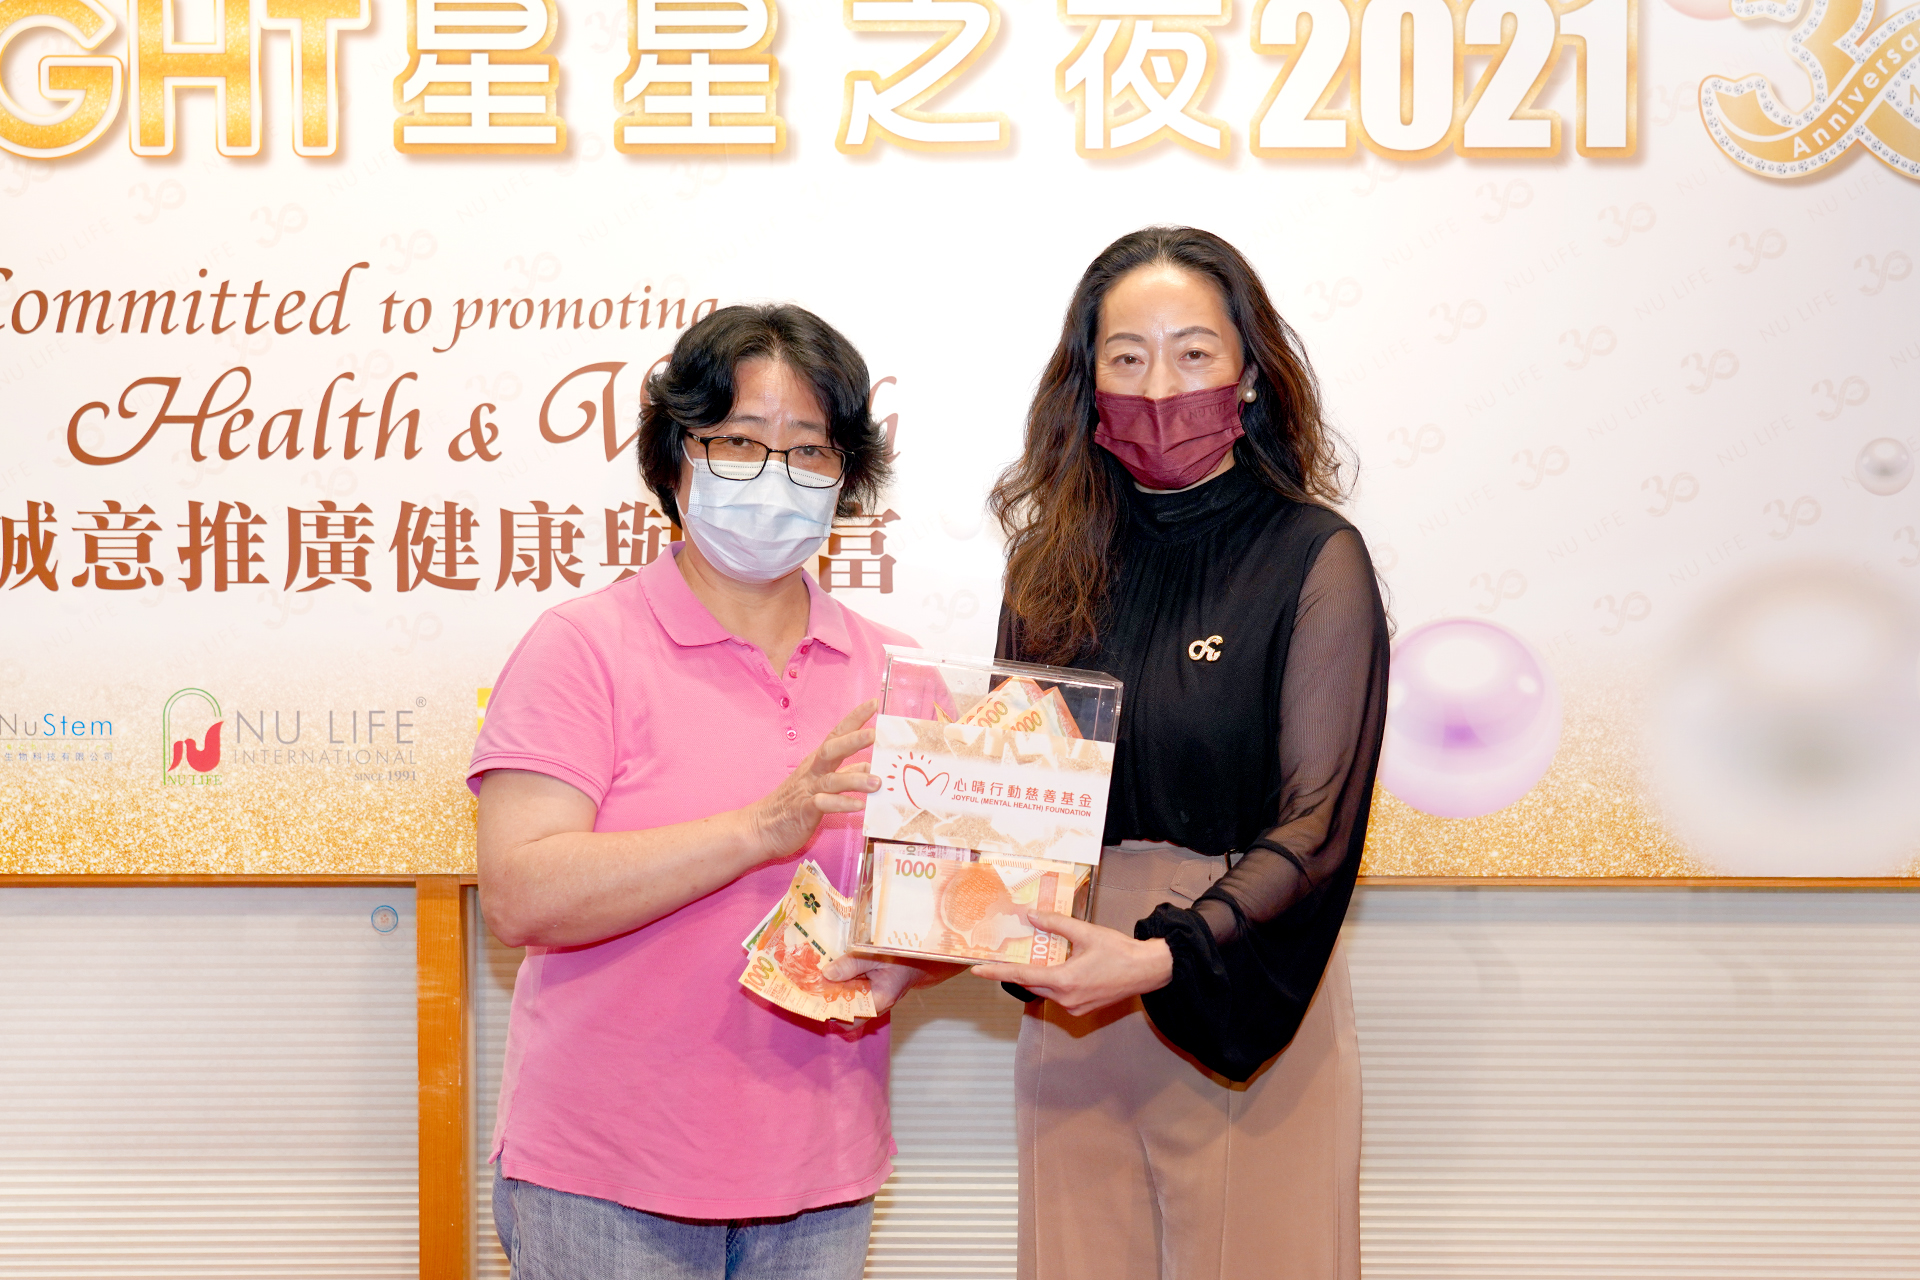 恭賀陳美仙女士從星級百萬富翁遊戲贏取HK$10,000獎金並與公司合共捐助HK$10000予「心晴行動慈善基金」